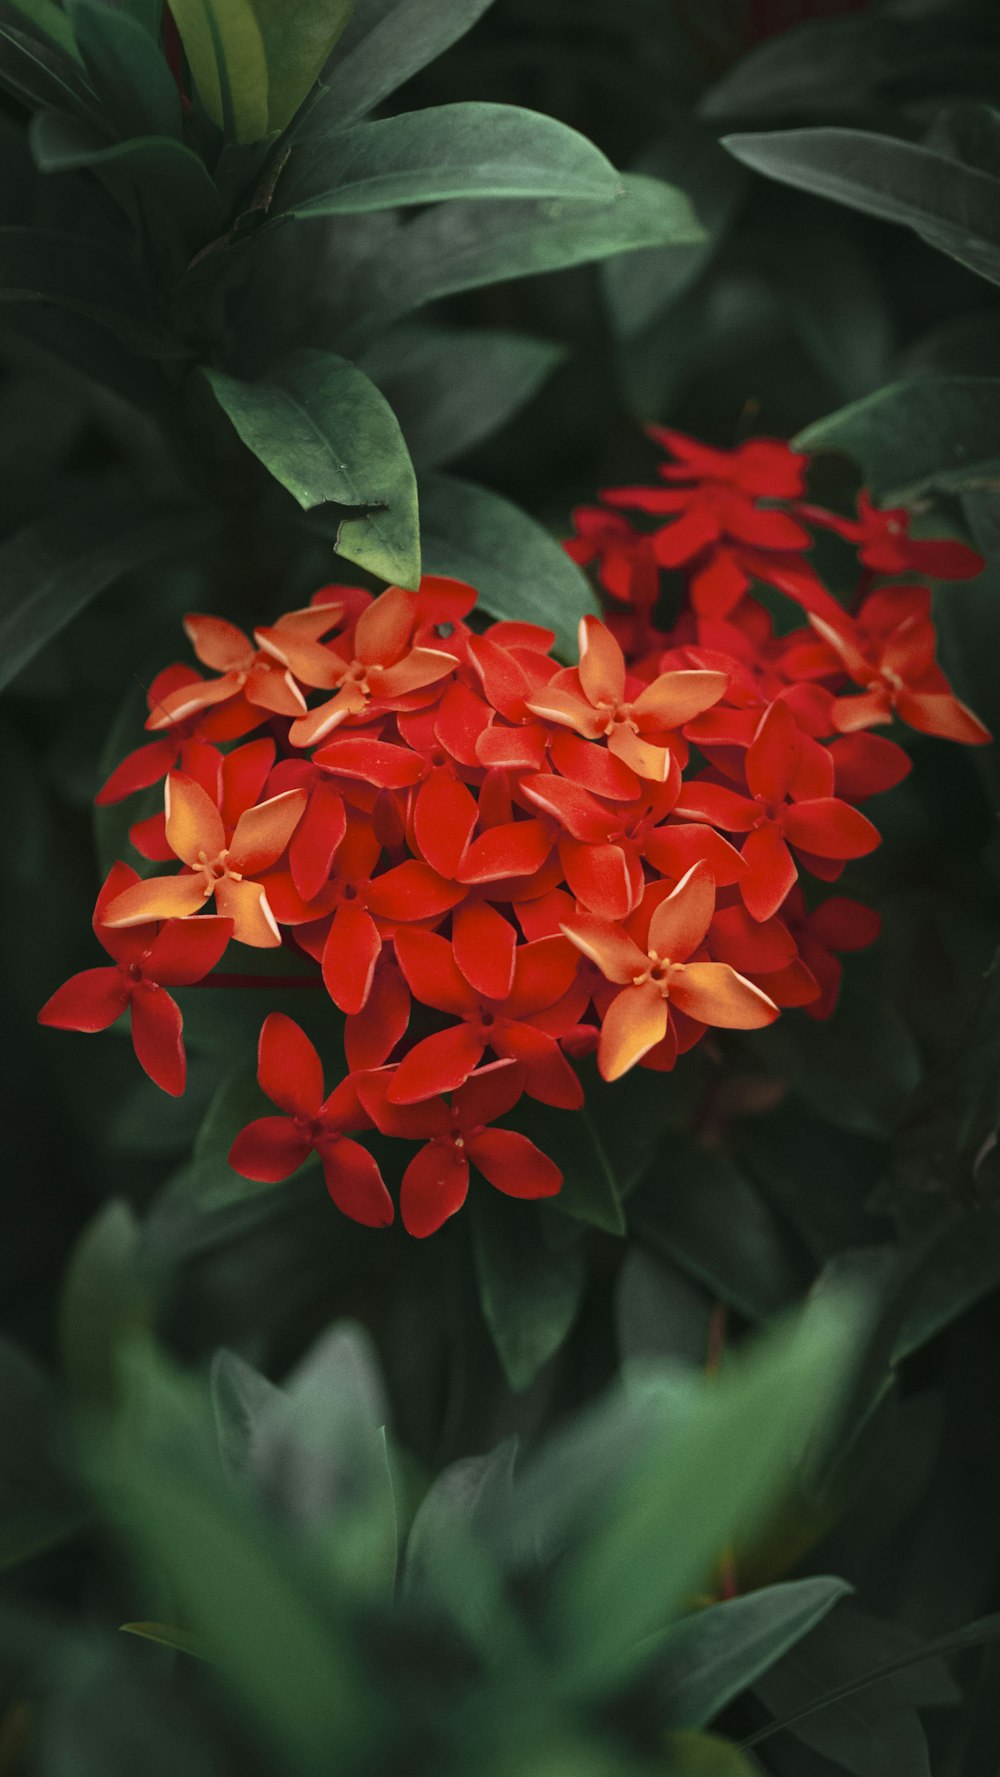 덤불에 있는 빨간 꽃 한 다발